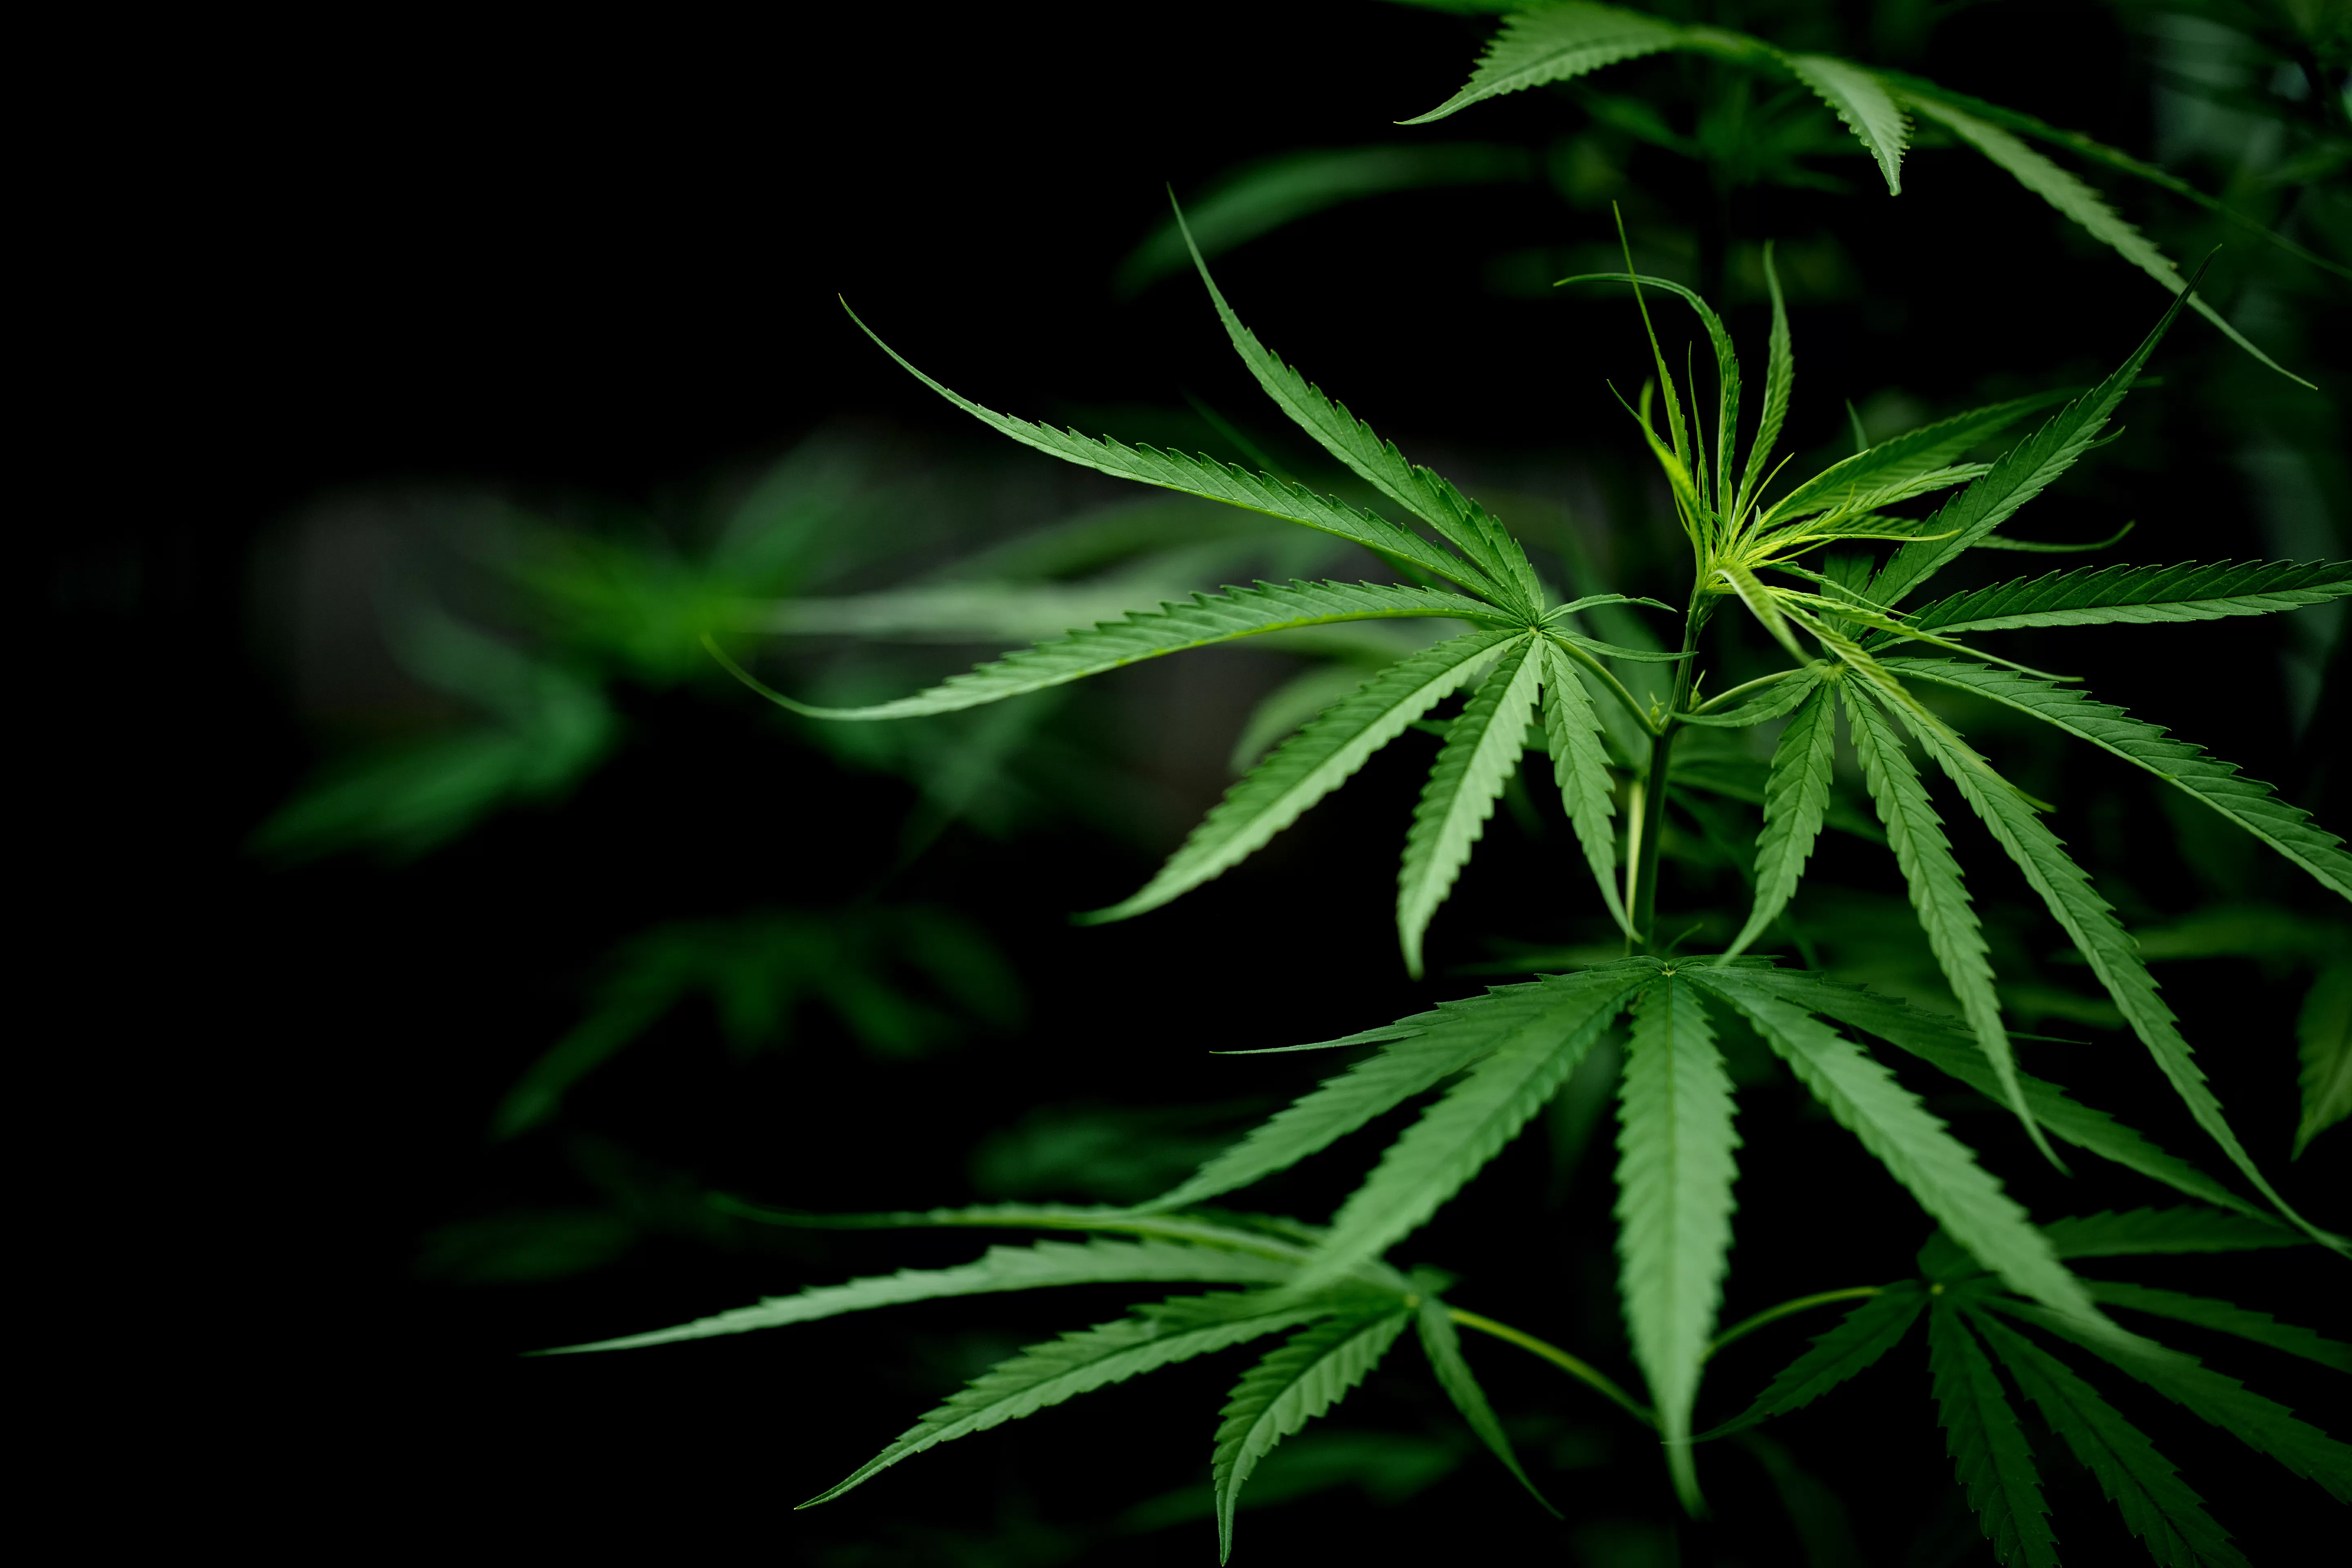 La pianta di cannabis è affascinante sotto moltissimi punti di vista, vediamo in questa guida